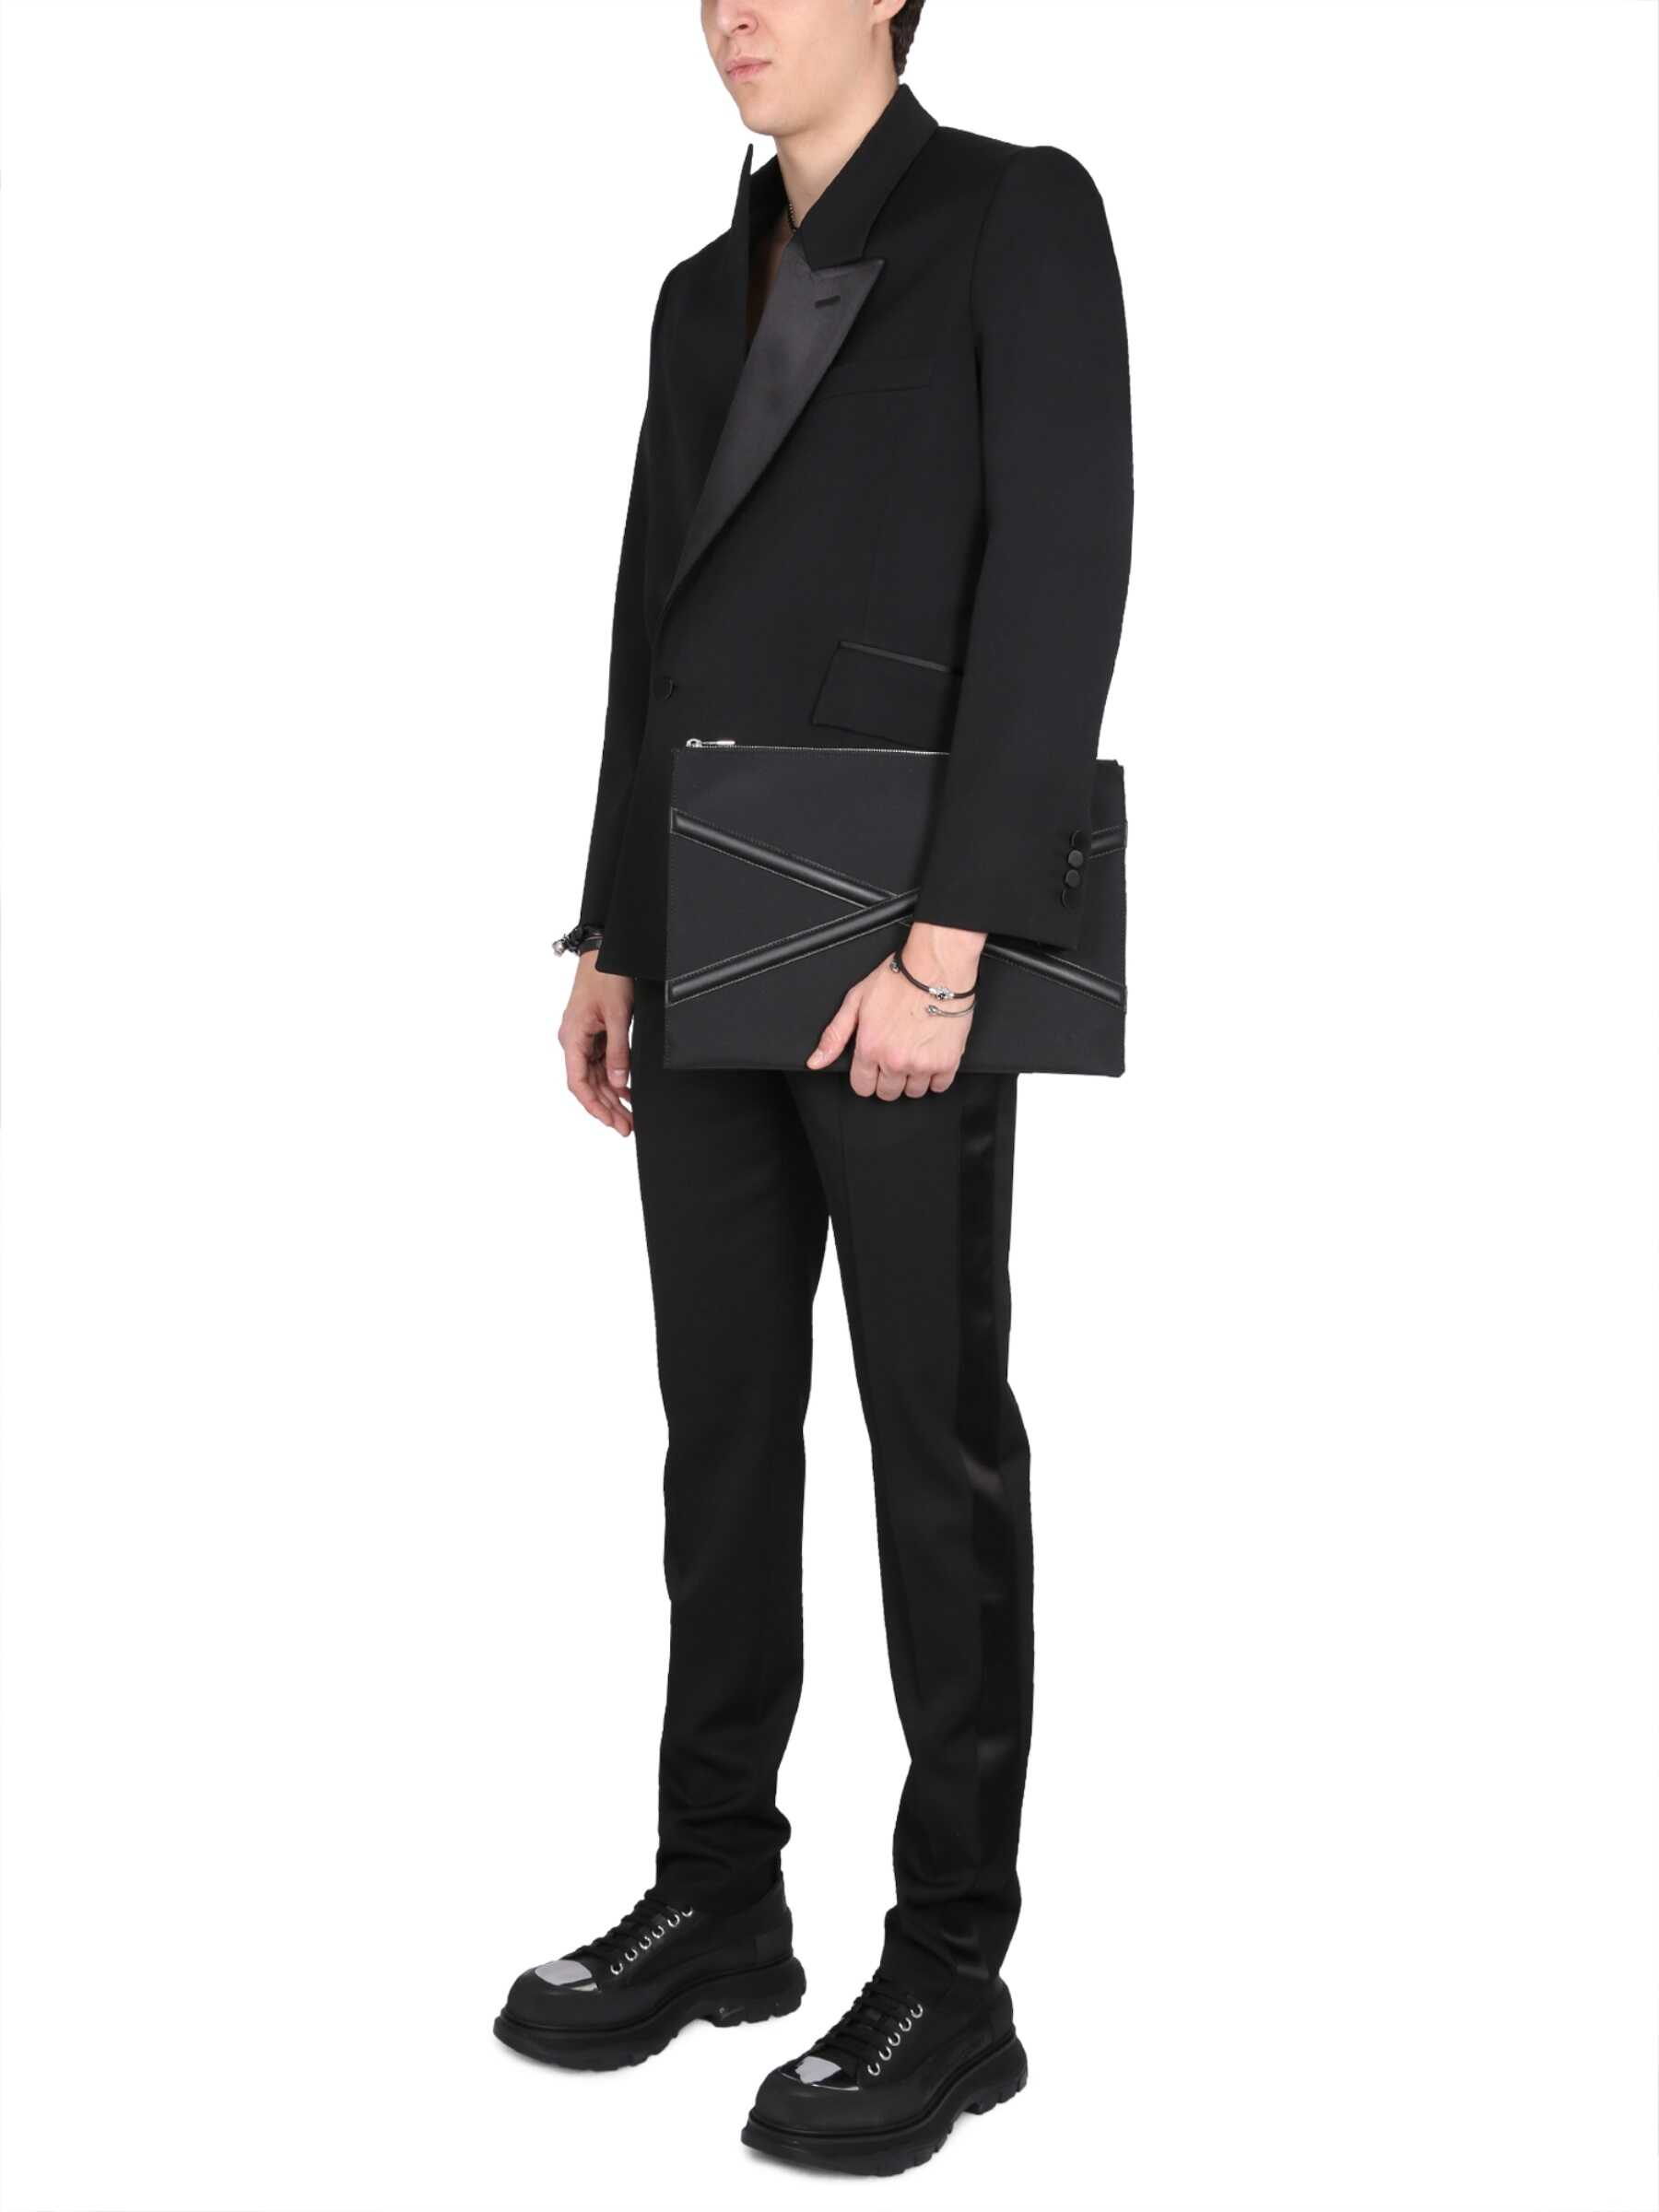 Alexander McQueen Tuxedo Jacket BLACK Alexander